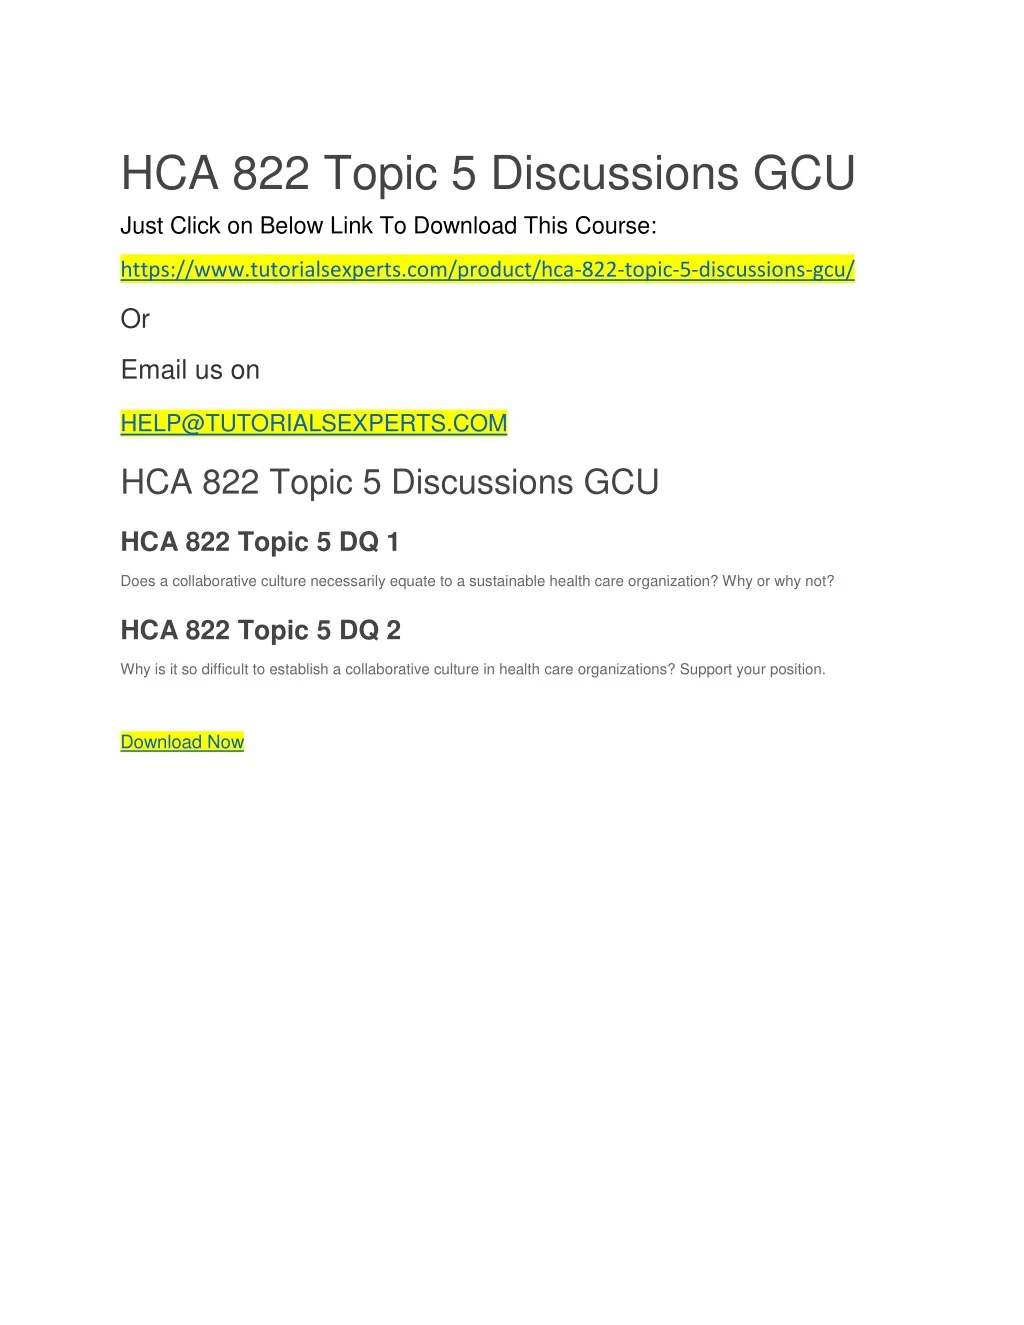 hca 822 topic 5 discussions gcu just click